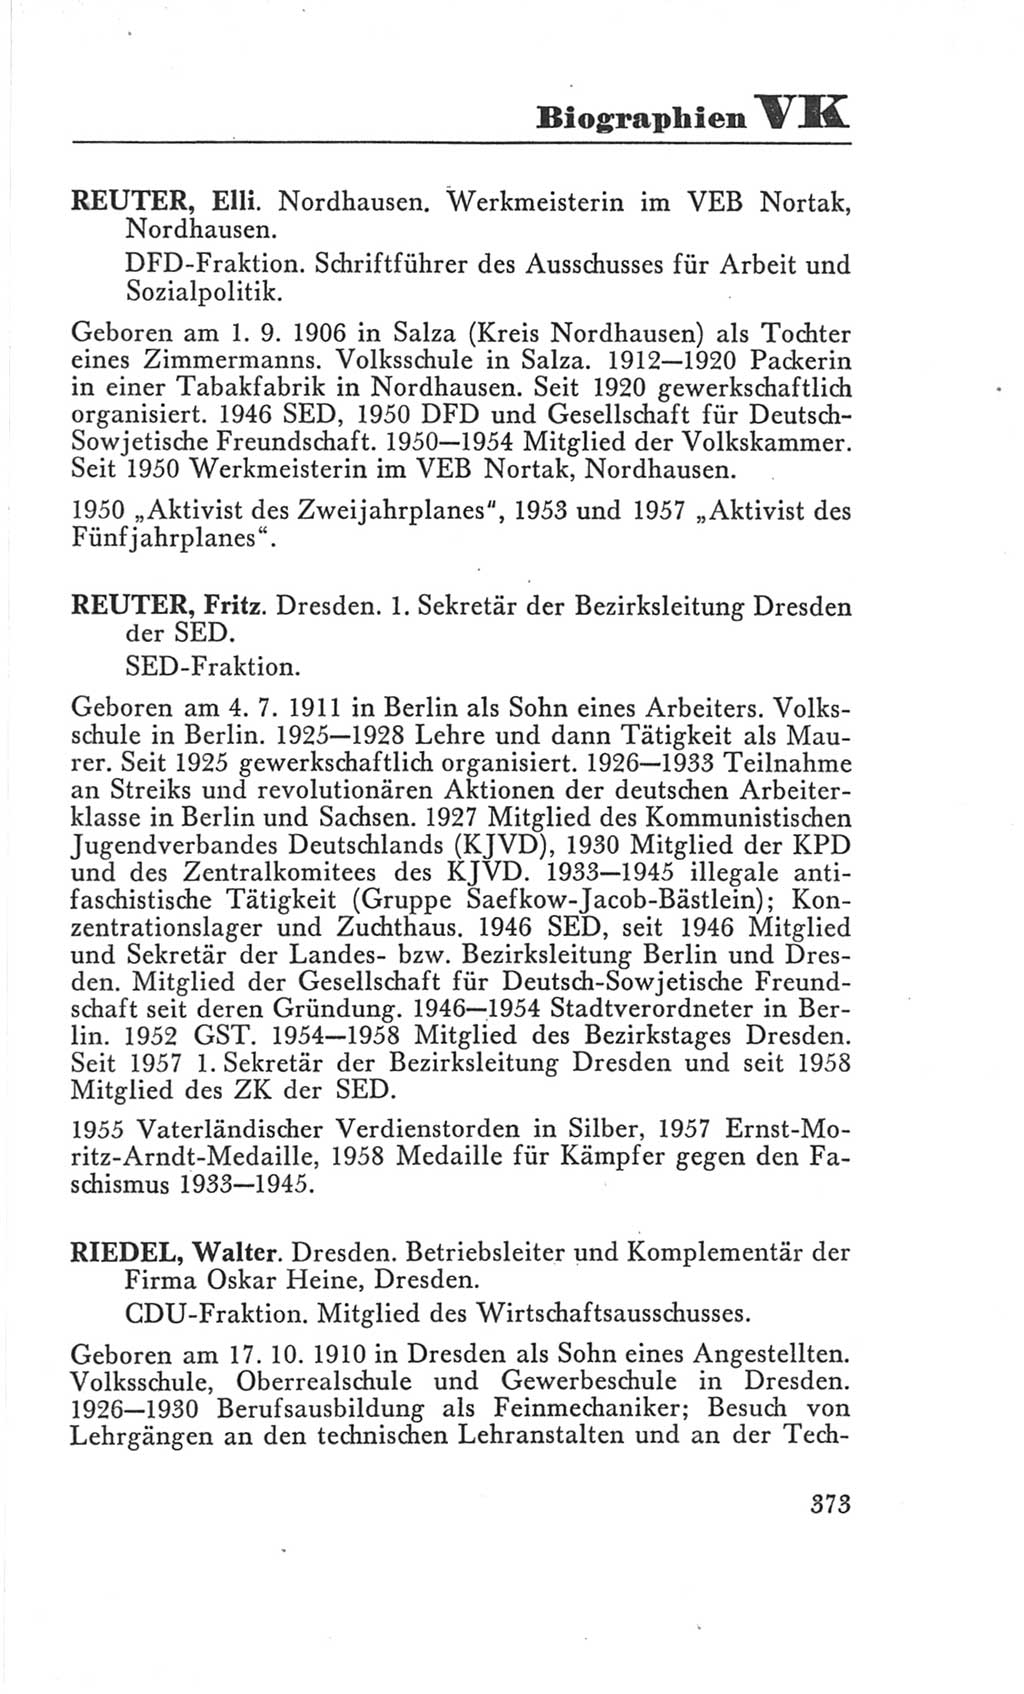 Handbuch der Volkskammer (VK) der Deutschen Demokratischen Republik (DDR), 3. Wahlperiode 1958-1963, Seite 373 (Hdb. VK. DDR 3. WP. 1958-1963, S. 373)